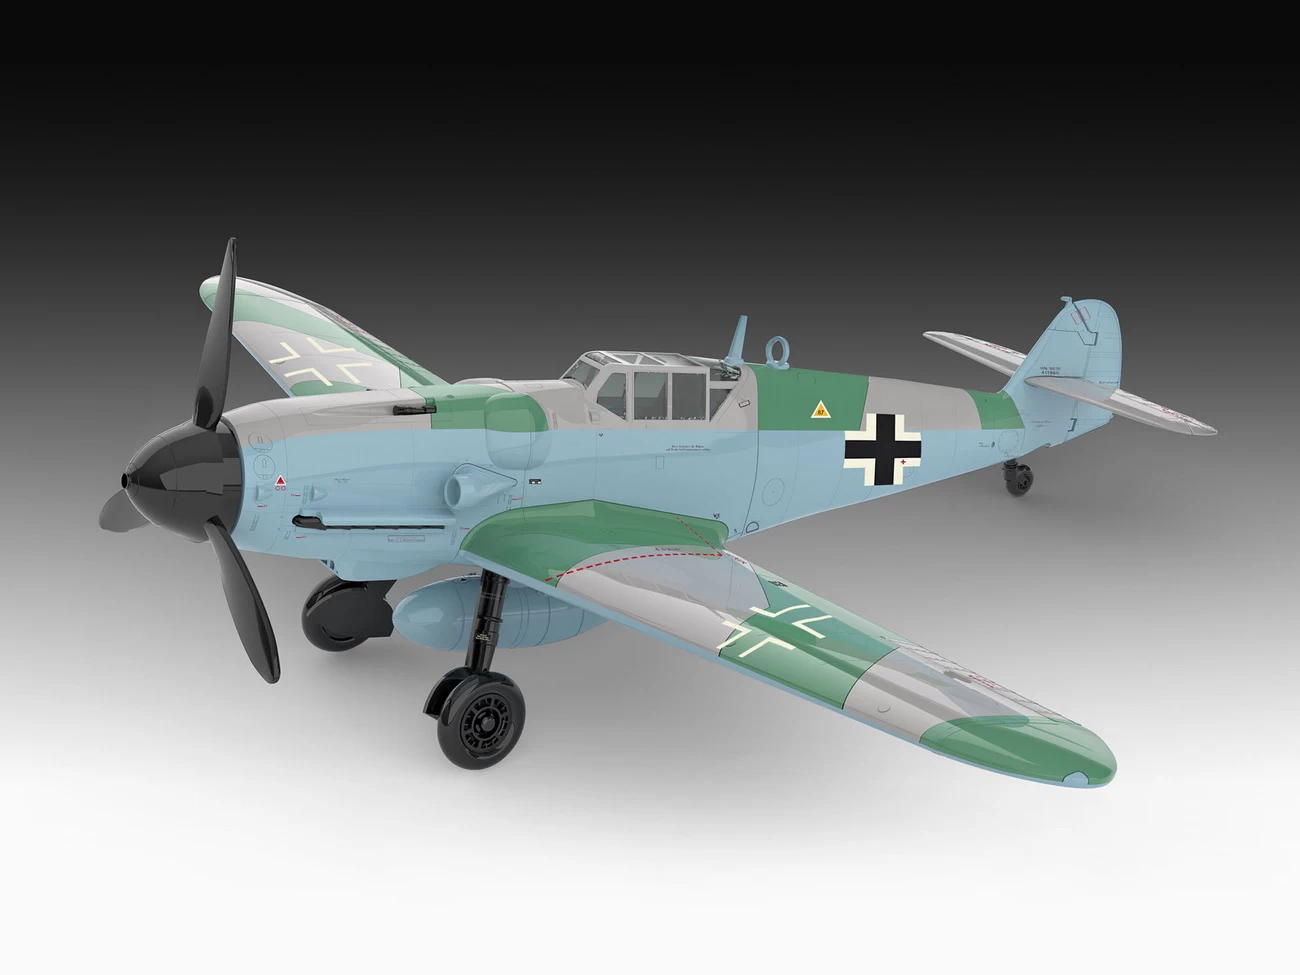 Revell 03653 - Messerschmitt Bf109G-6 - easy click